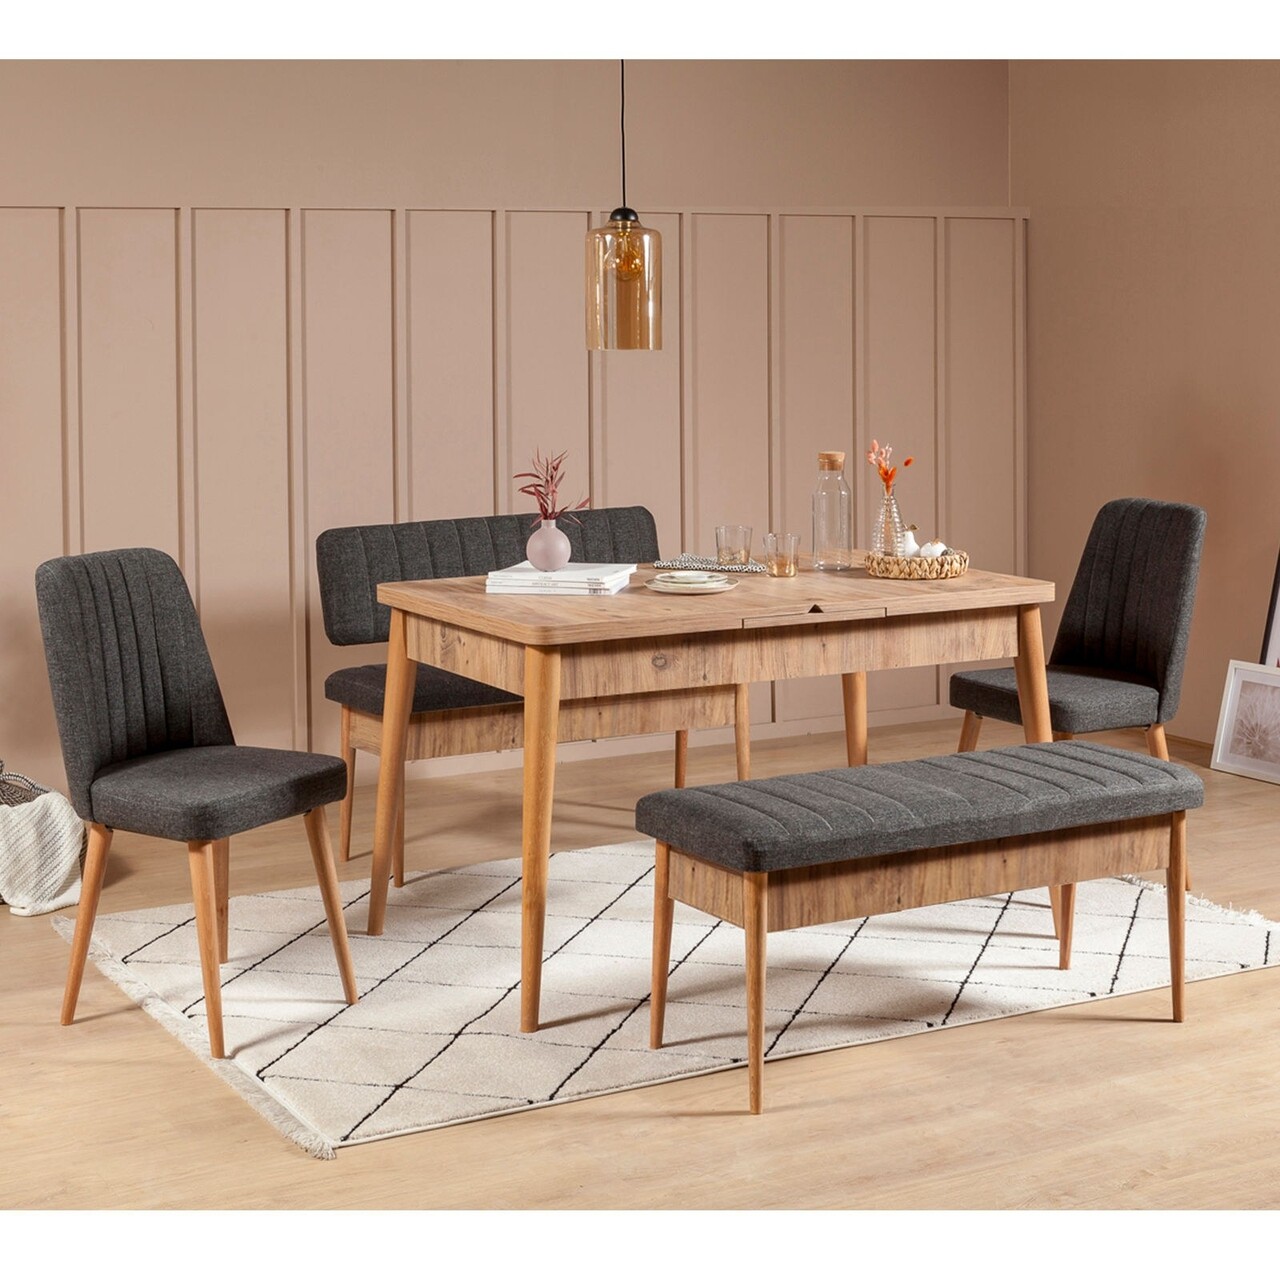 Asztal szett 2 székkel és 2 pad, Vella, Vina, melaminált PAL, barna/antracit